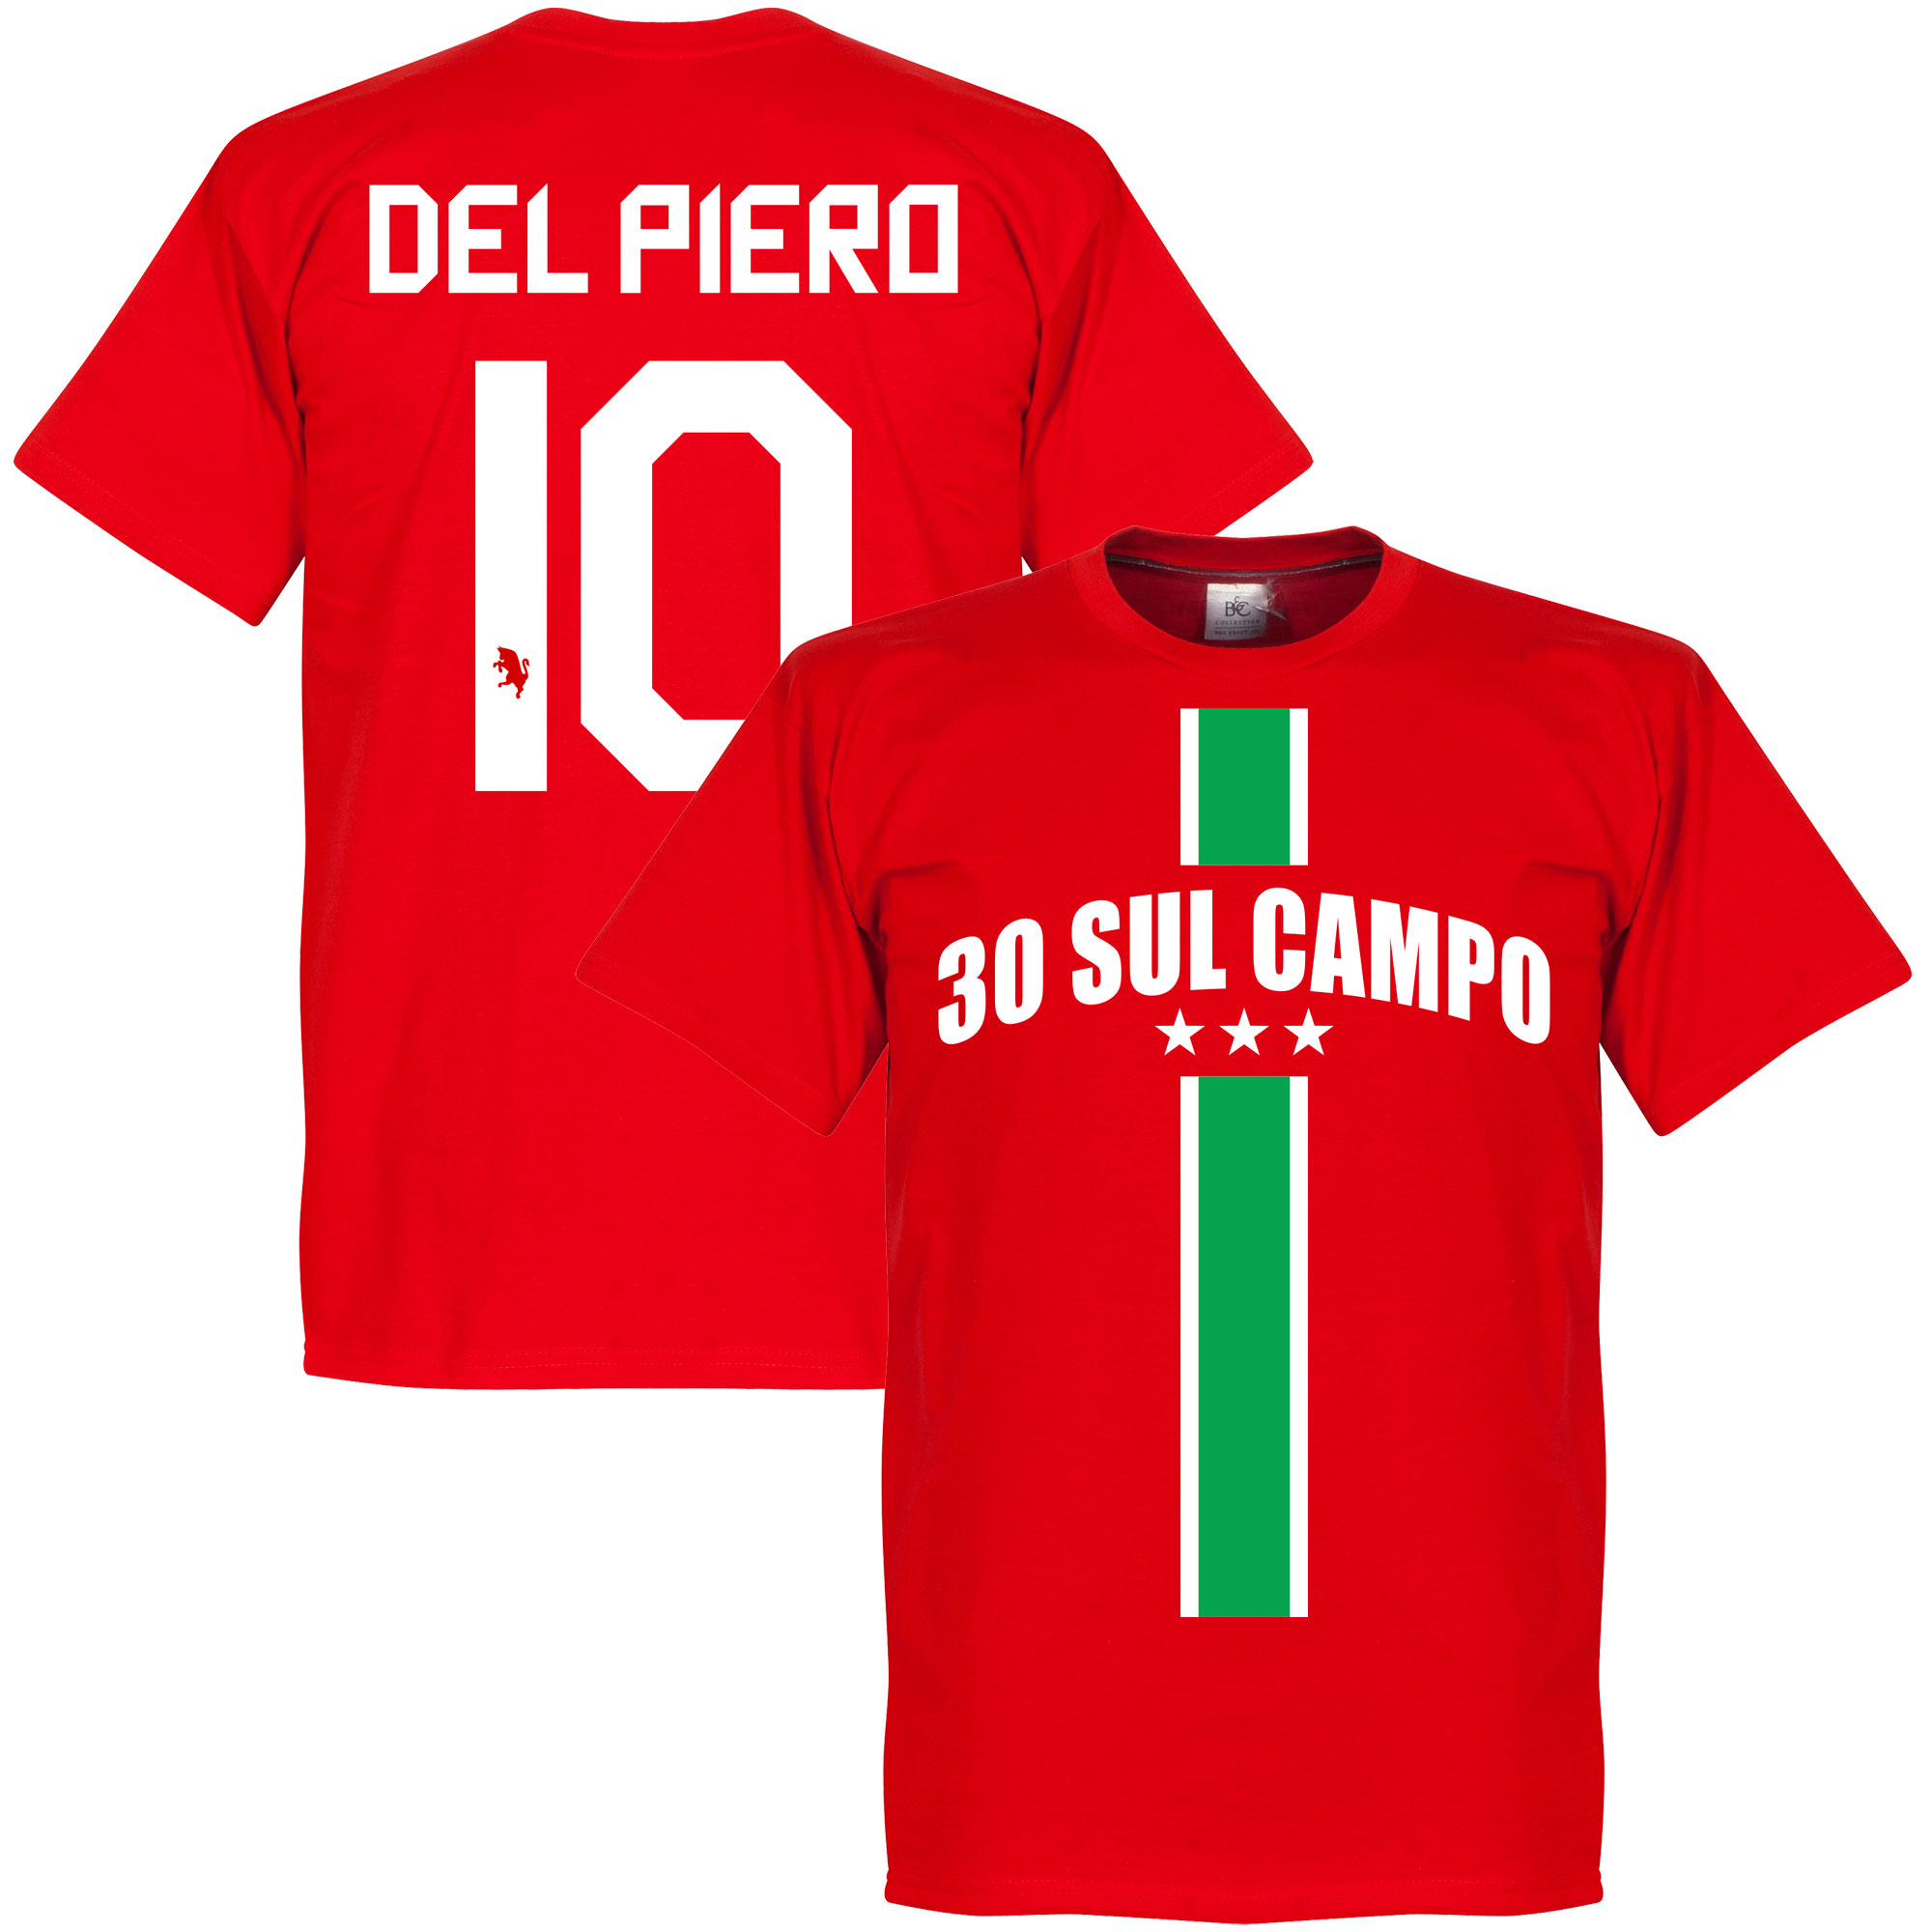 30 Sul Campo Del Piero T-shirt XXXL